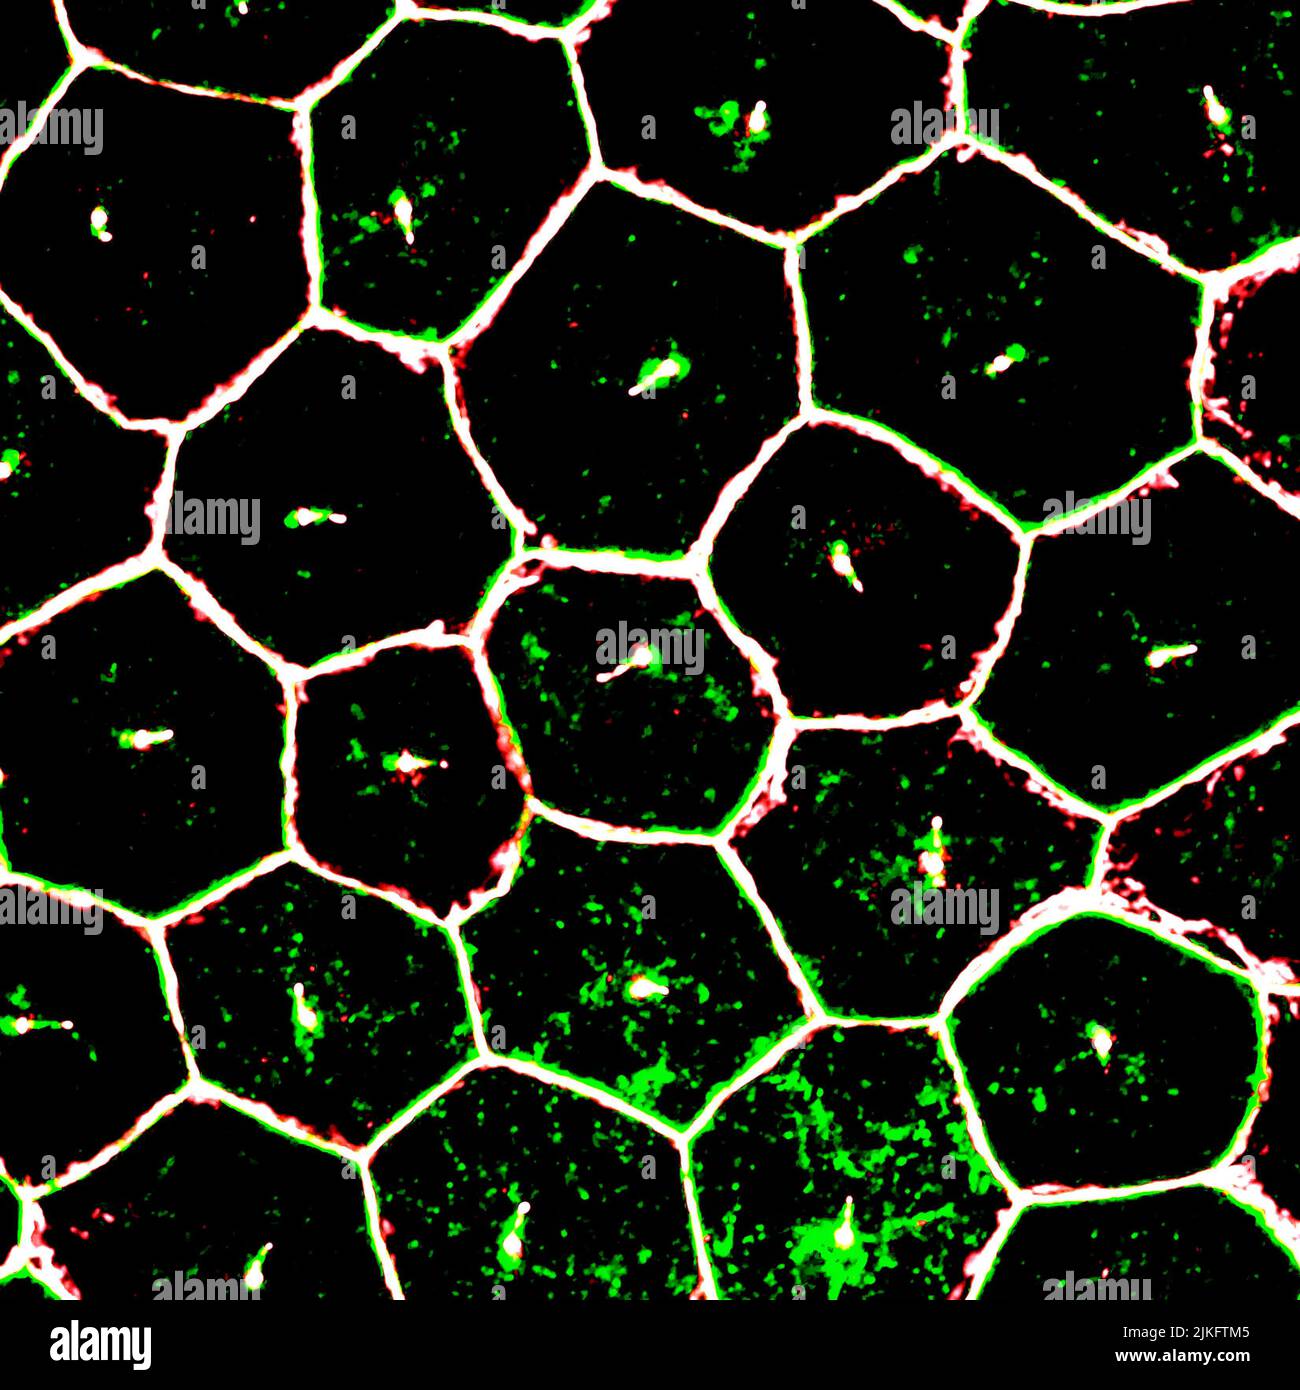 Dieses Bild zeigt reife iPSCs (induzierte pluripotente Stammzellen), die aus retinalen Pigmentepithel-Zellen (RPE) gewonnen wurden und durch eine hochauflösende konfokale Mikroskopie vergrößert wurden. Stockfoto